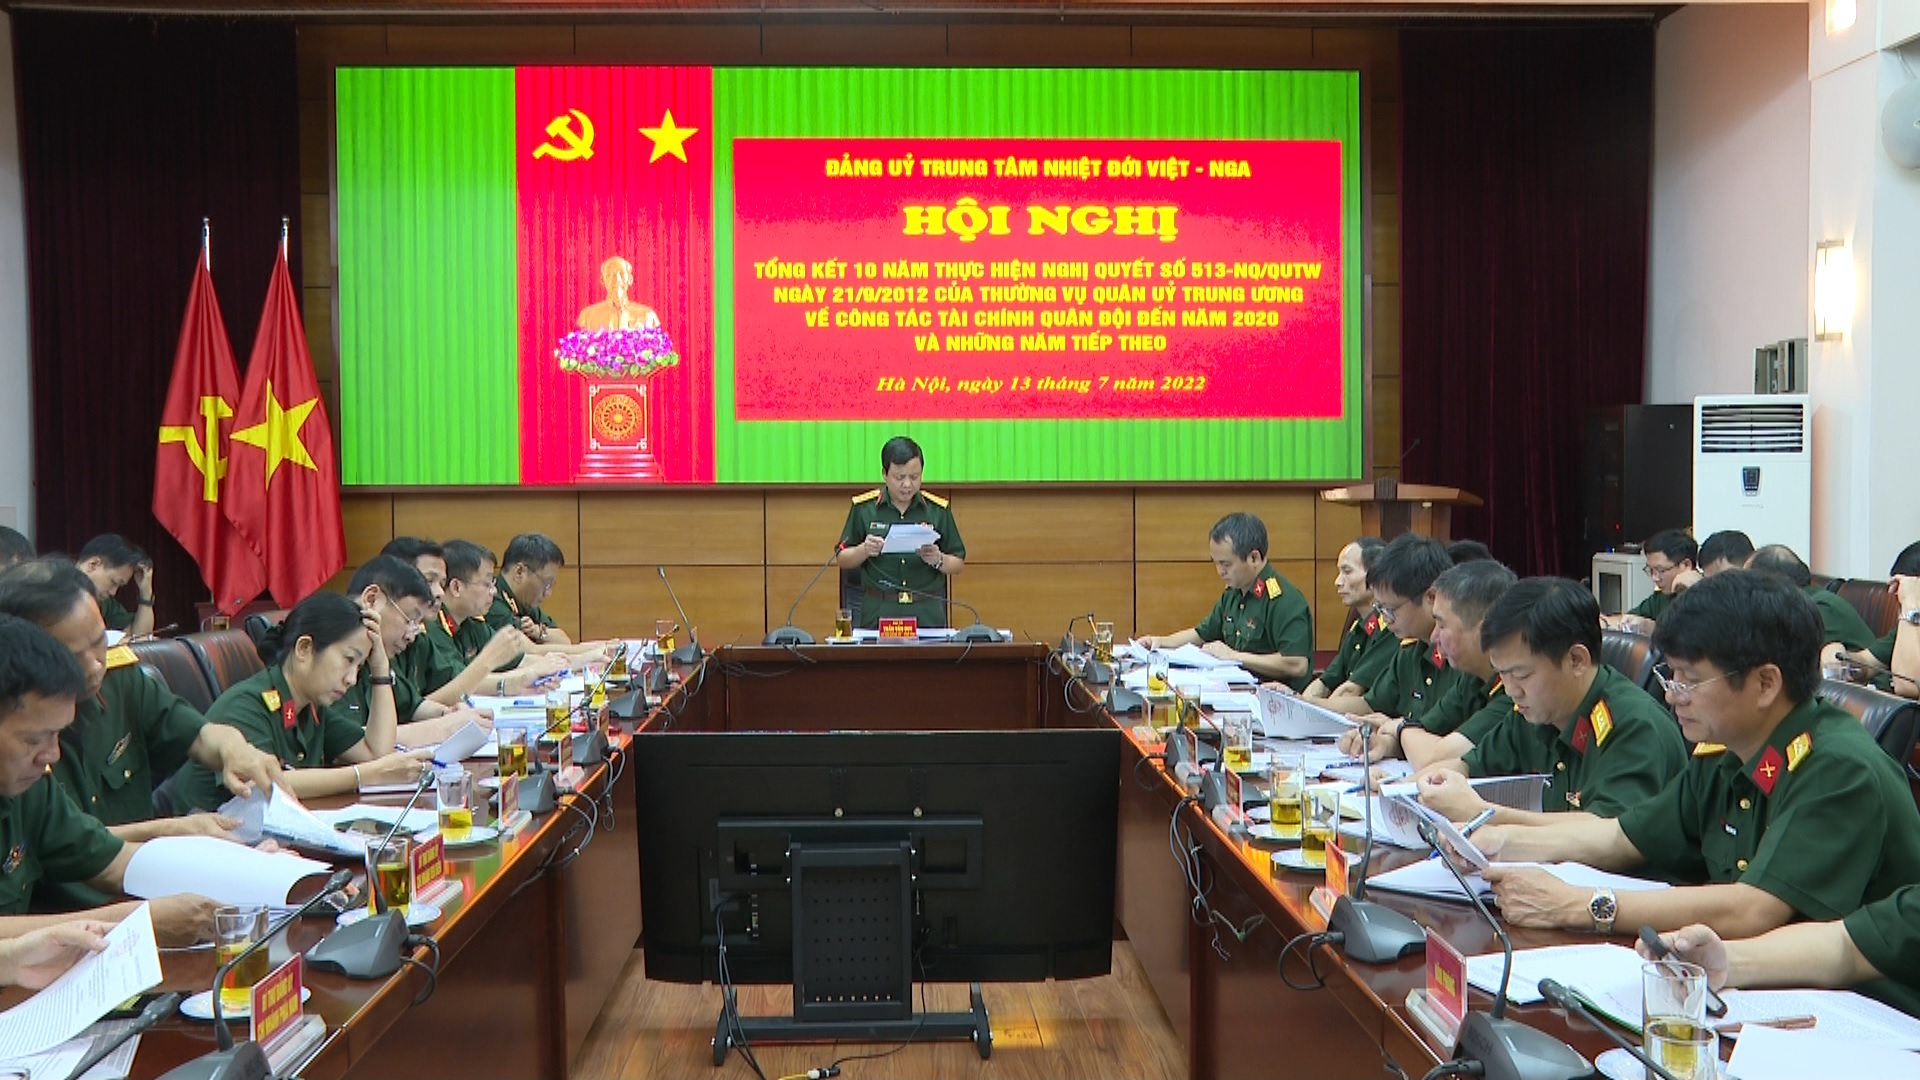 Trung tâm Nhiệt đới Việt – Nga tổng kết 10 năm thực hiện Nghị Quyết 513, Nghị quyết 623 và Nghị quyết 765 của Quân uỷ Trung ương